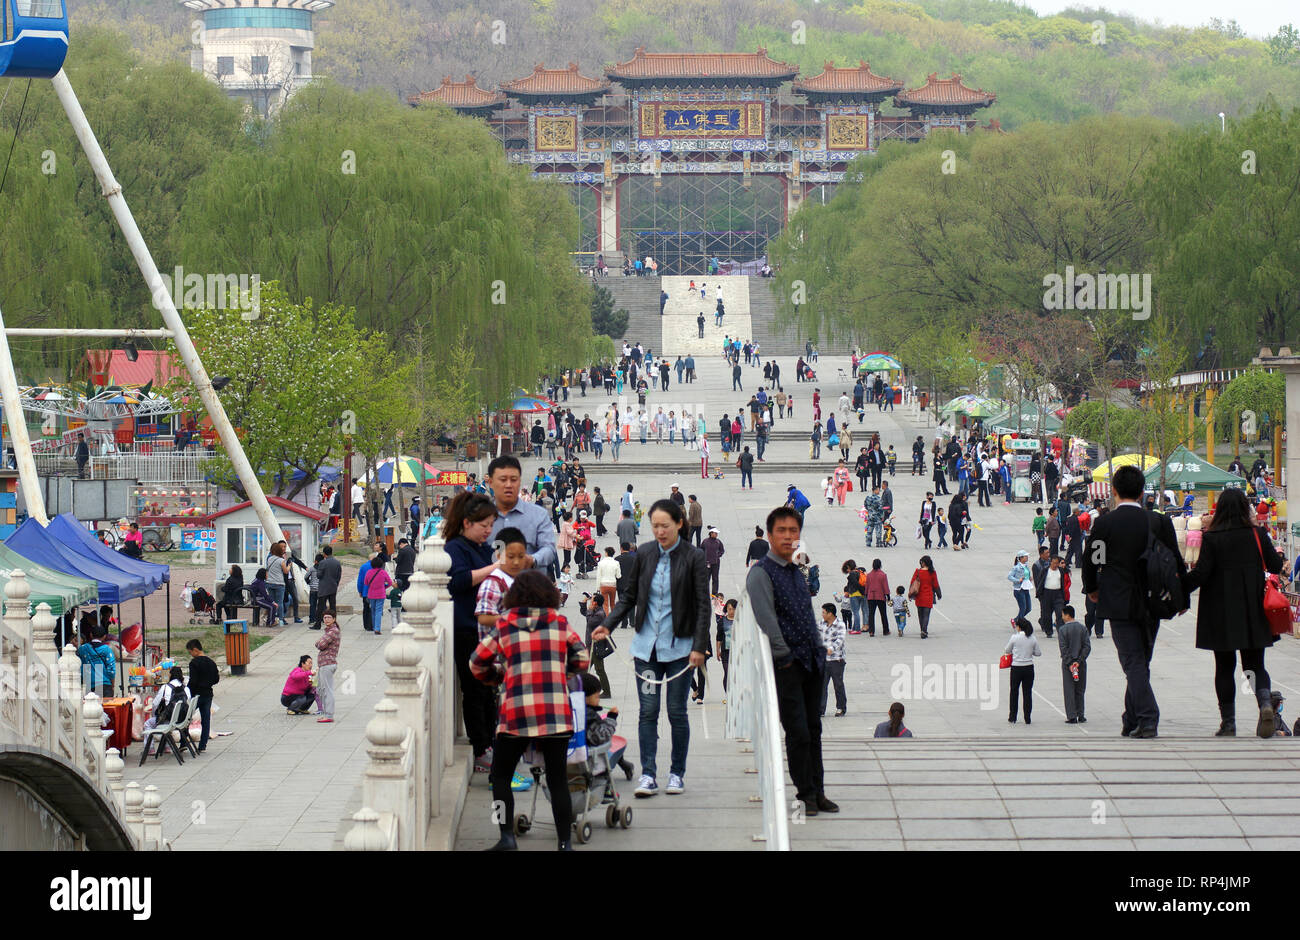 Les Chinois marcher et s'amuser au printemps dans le parc 219. Parcs d'attractions en Chine. Anshan, province de Liaoning, Chine. 20 avril 2014 Banque D'Images